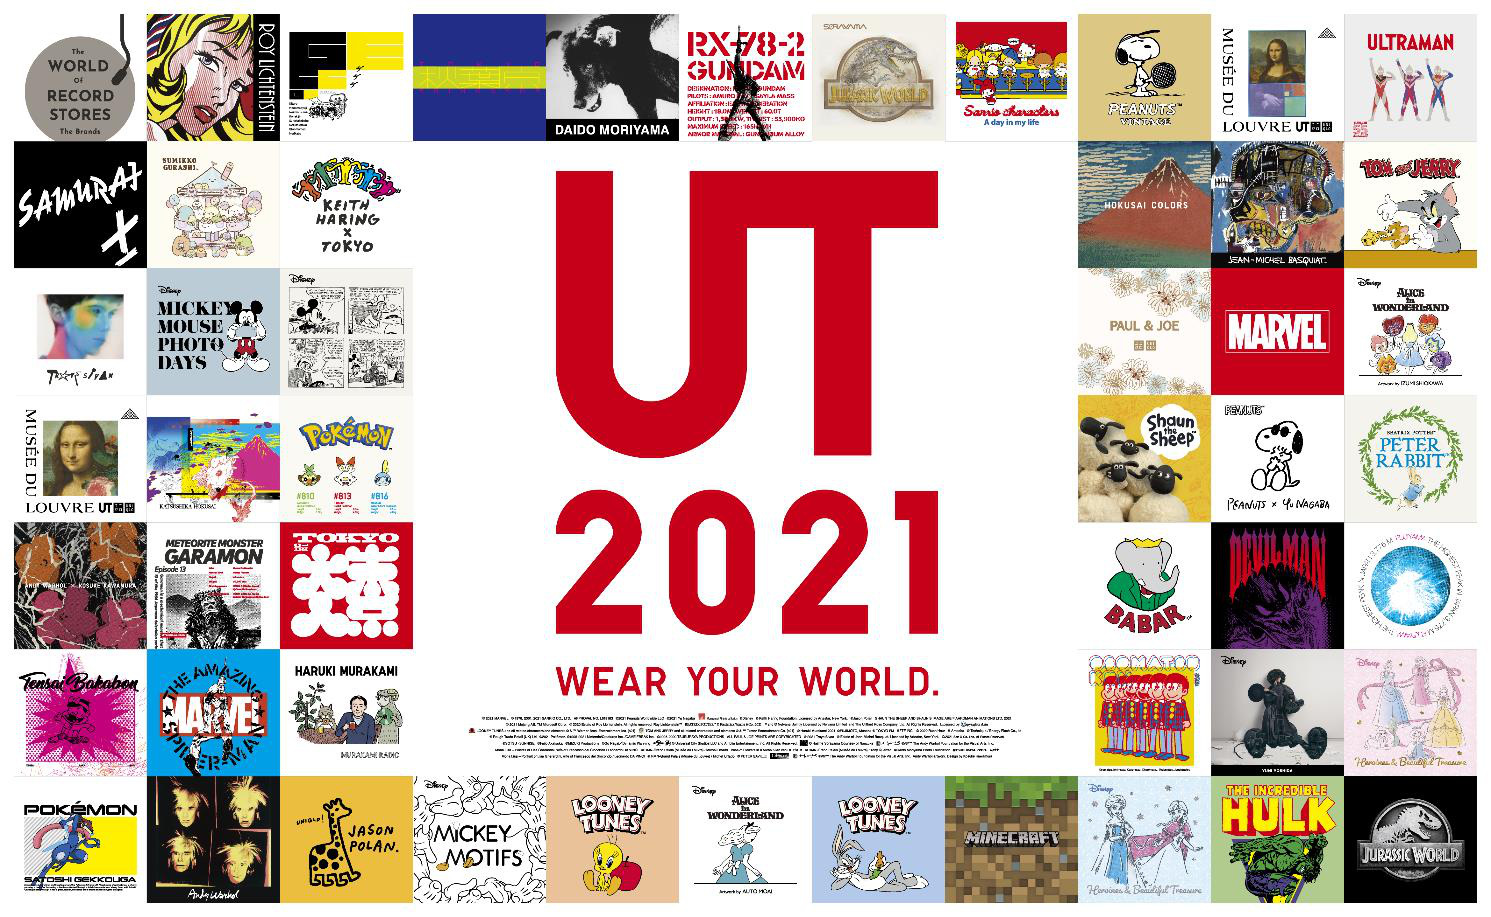 LMHT ra mắt bộ sưu tập áo UT kết hợp với Uniqlo  IKONIX